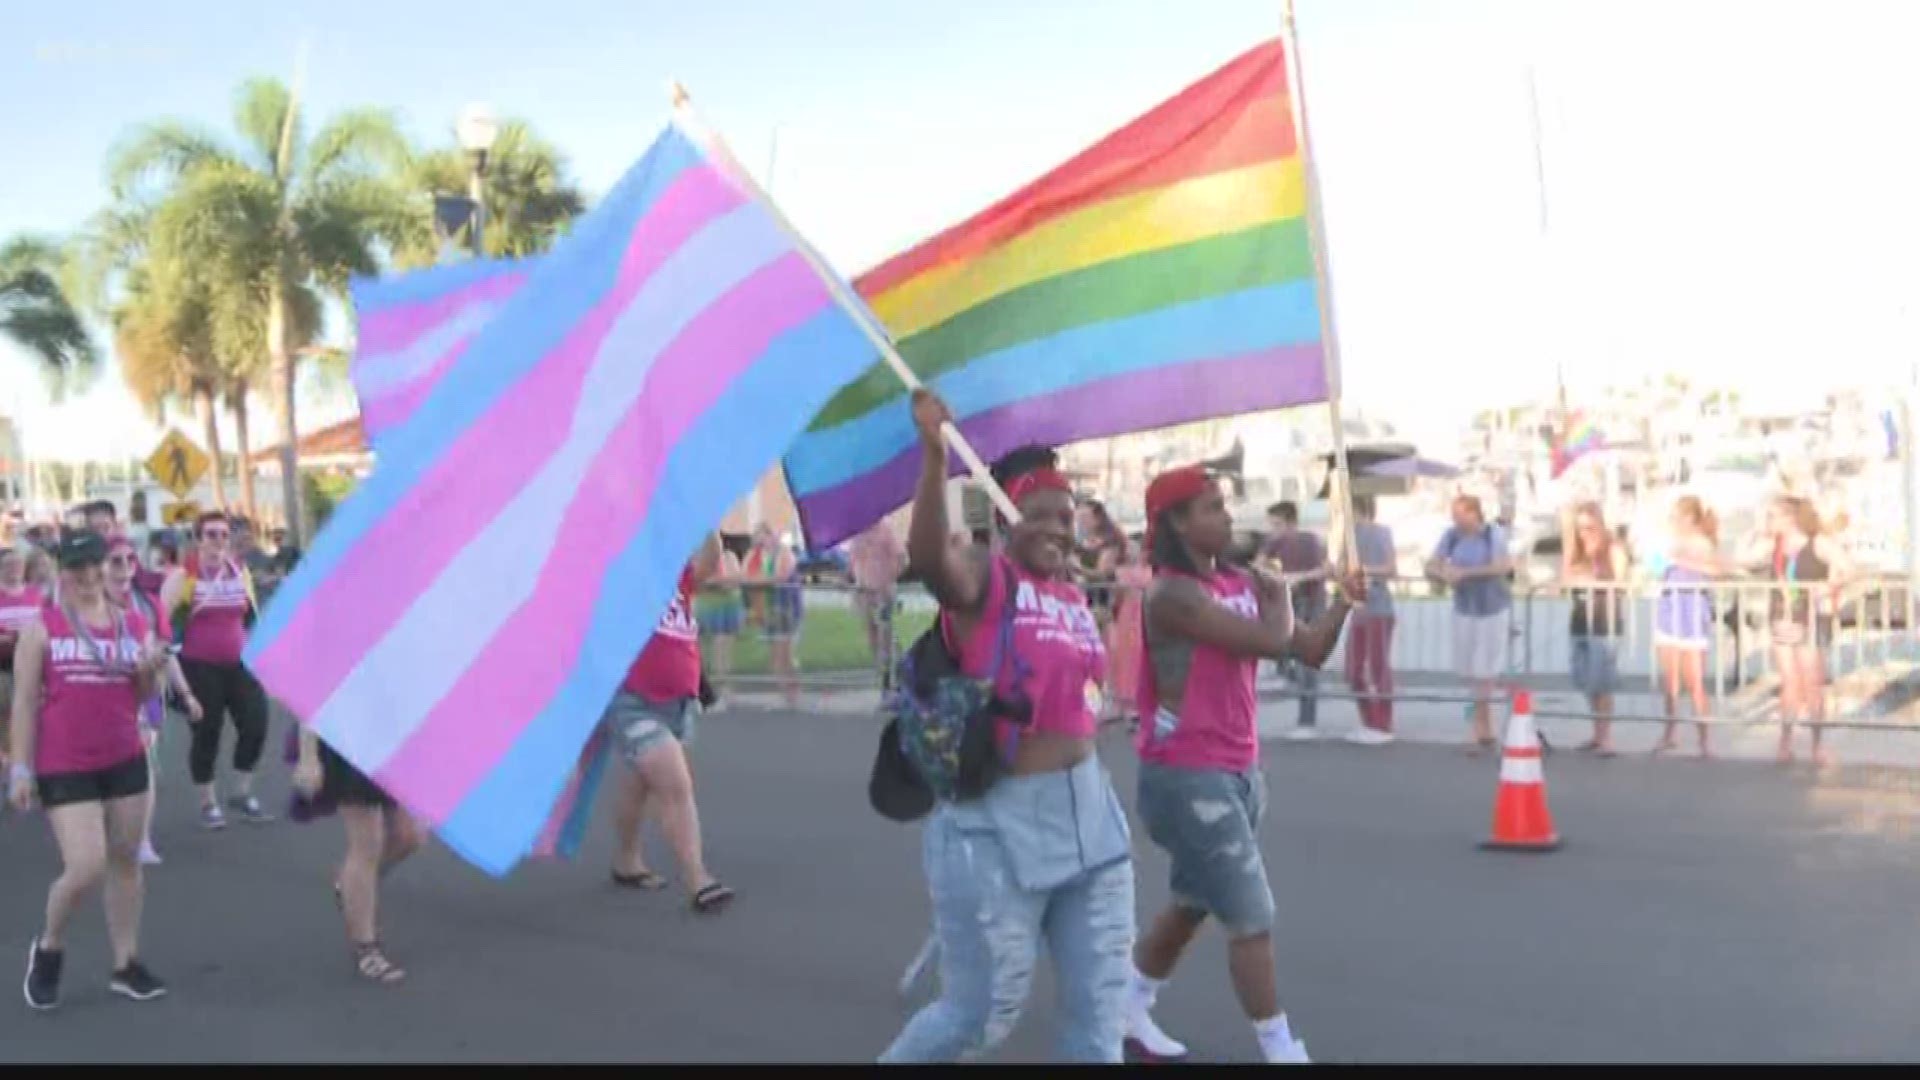 st petersburg florida gay pride parade 2016 top hats